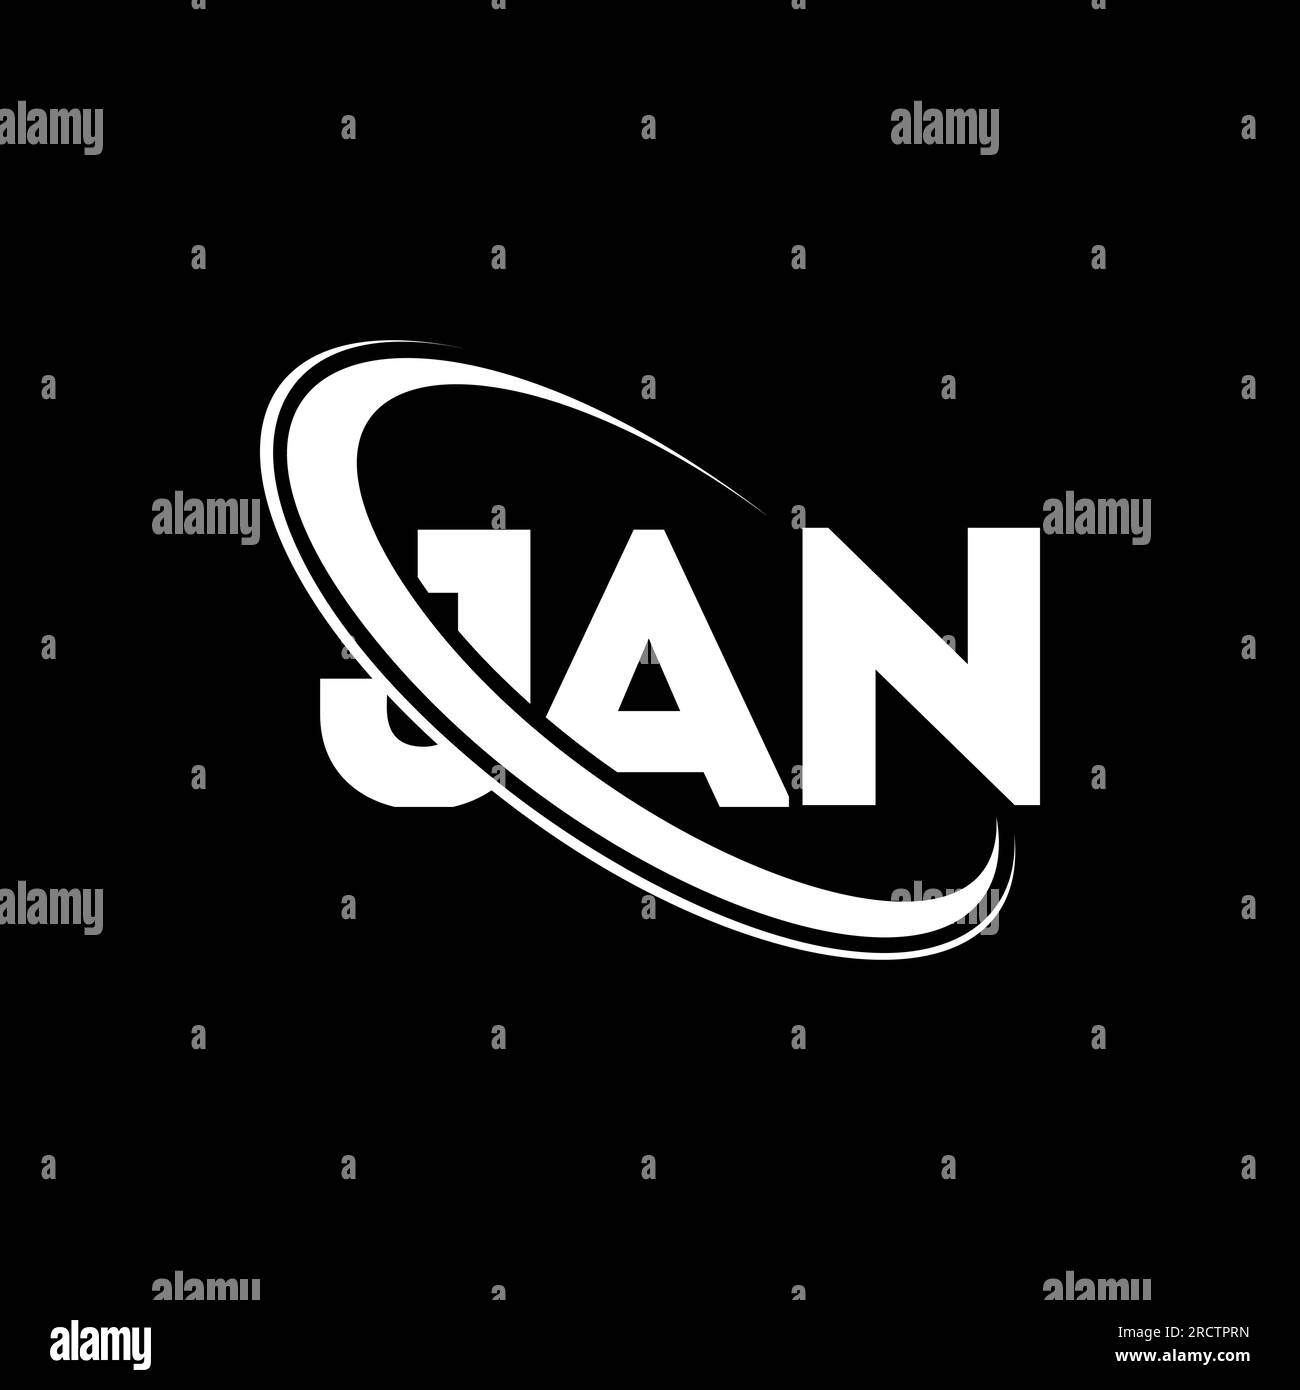 JAN-Logo. JAN-Brief. LOGO mit JAN-Buchstaben. Initialen JAN-Logo, verbunden mit einem Kreis und einem Monogramm-Logo in Großbuchstaben. JAN-Typografie für Technologie, Geschäfte Stock Vektor